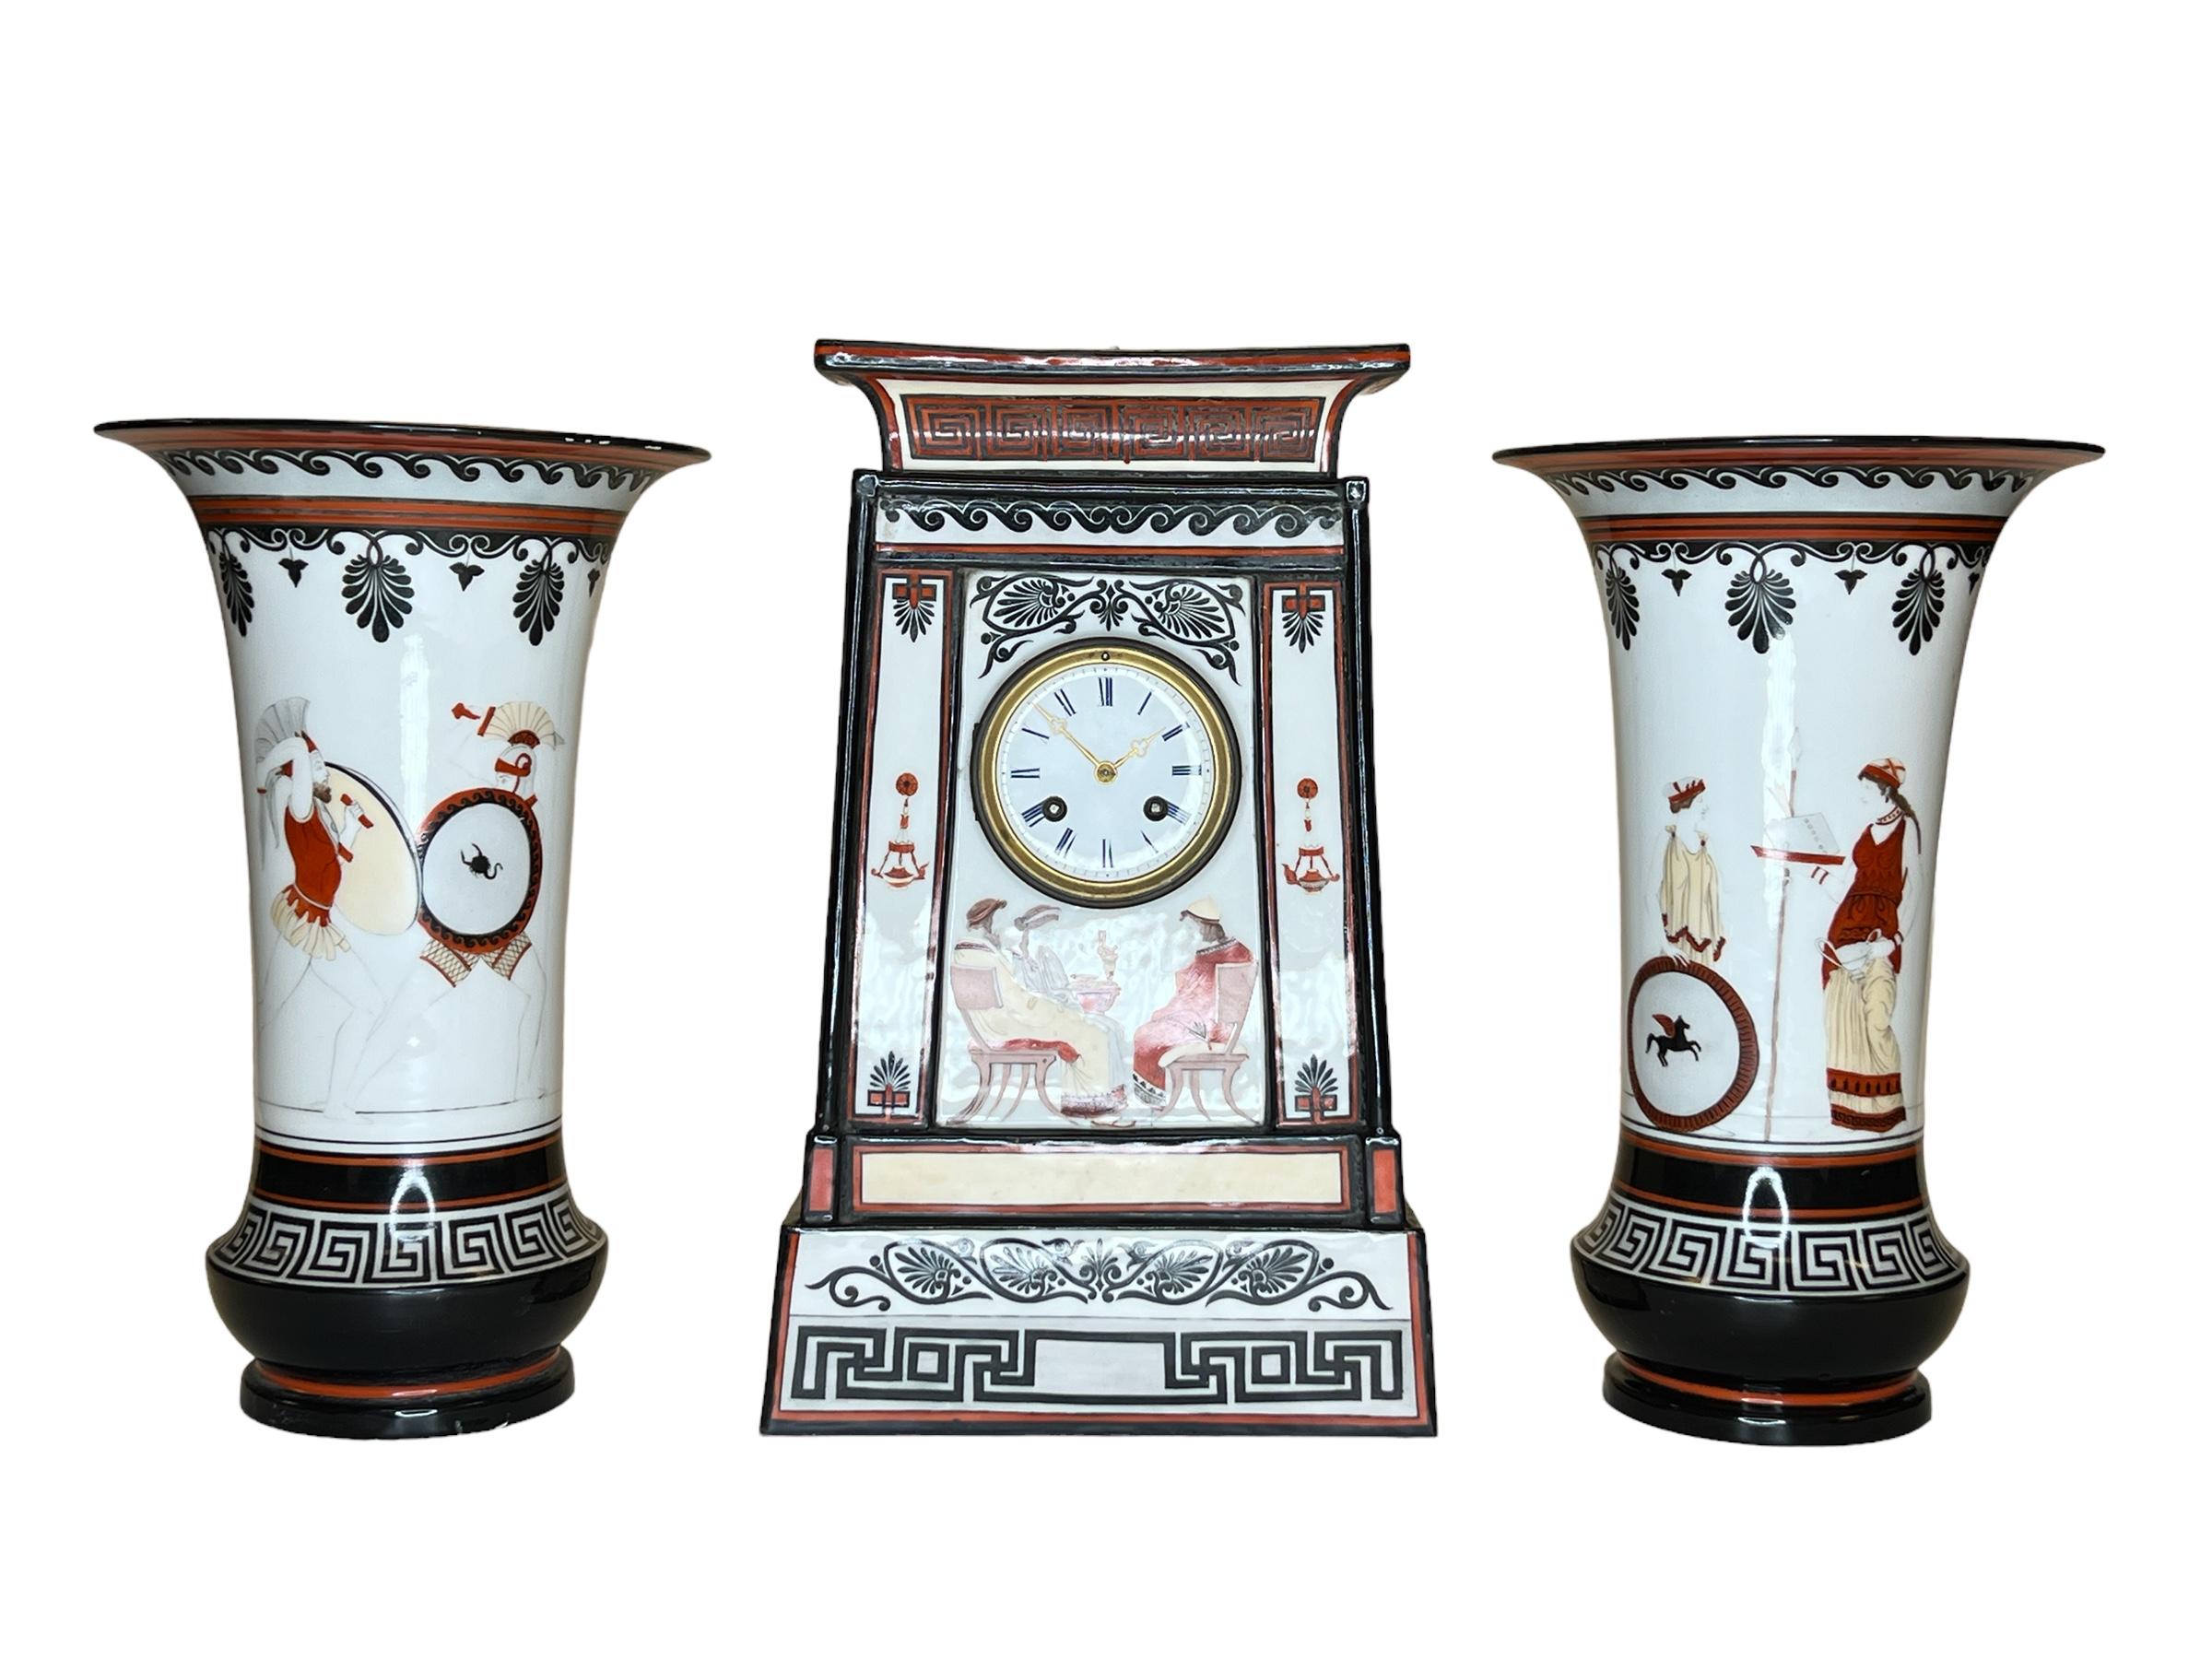 Très belle qualité et rare grecque française du 19ème siècle  Pendule de cheminée et vases en porcelaine de style néo-classique Garniture.
peint à la main avec des scènes grecques .